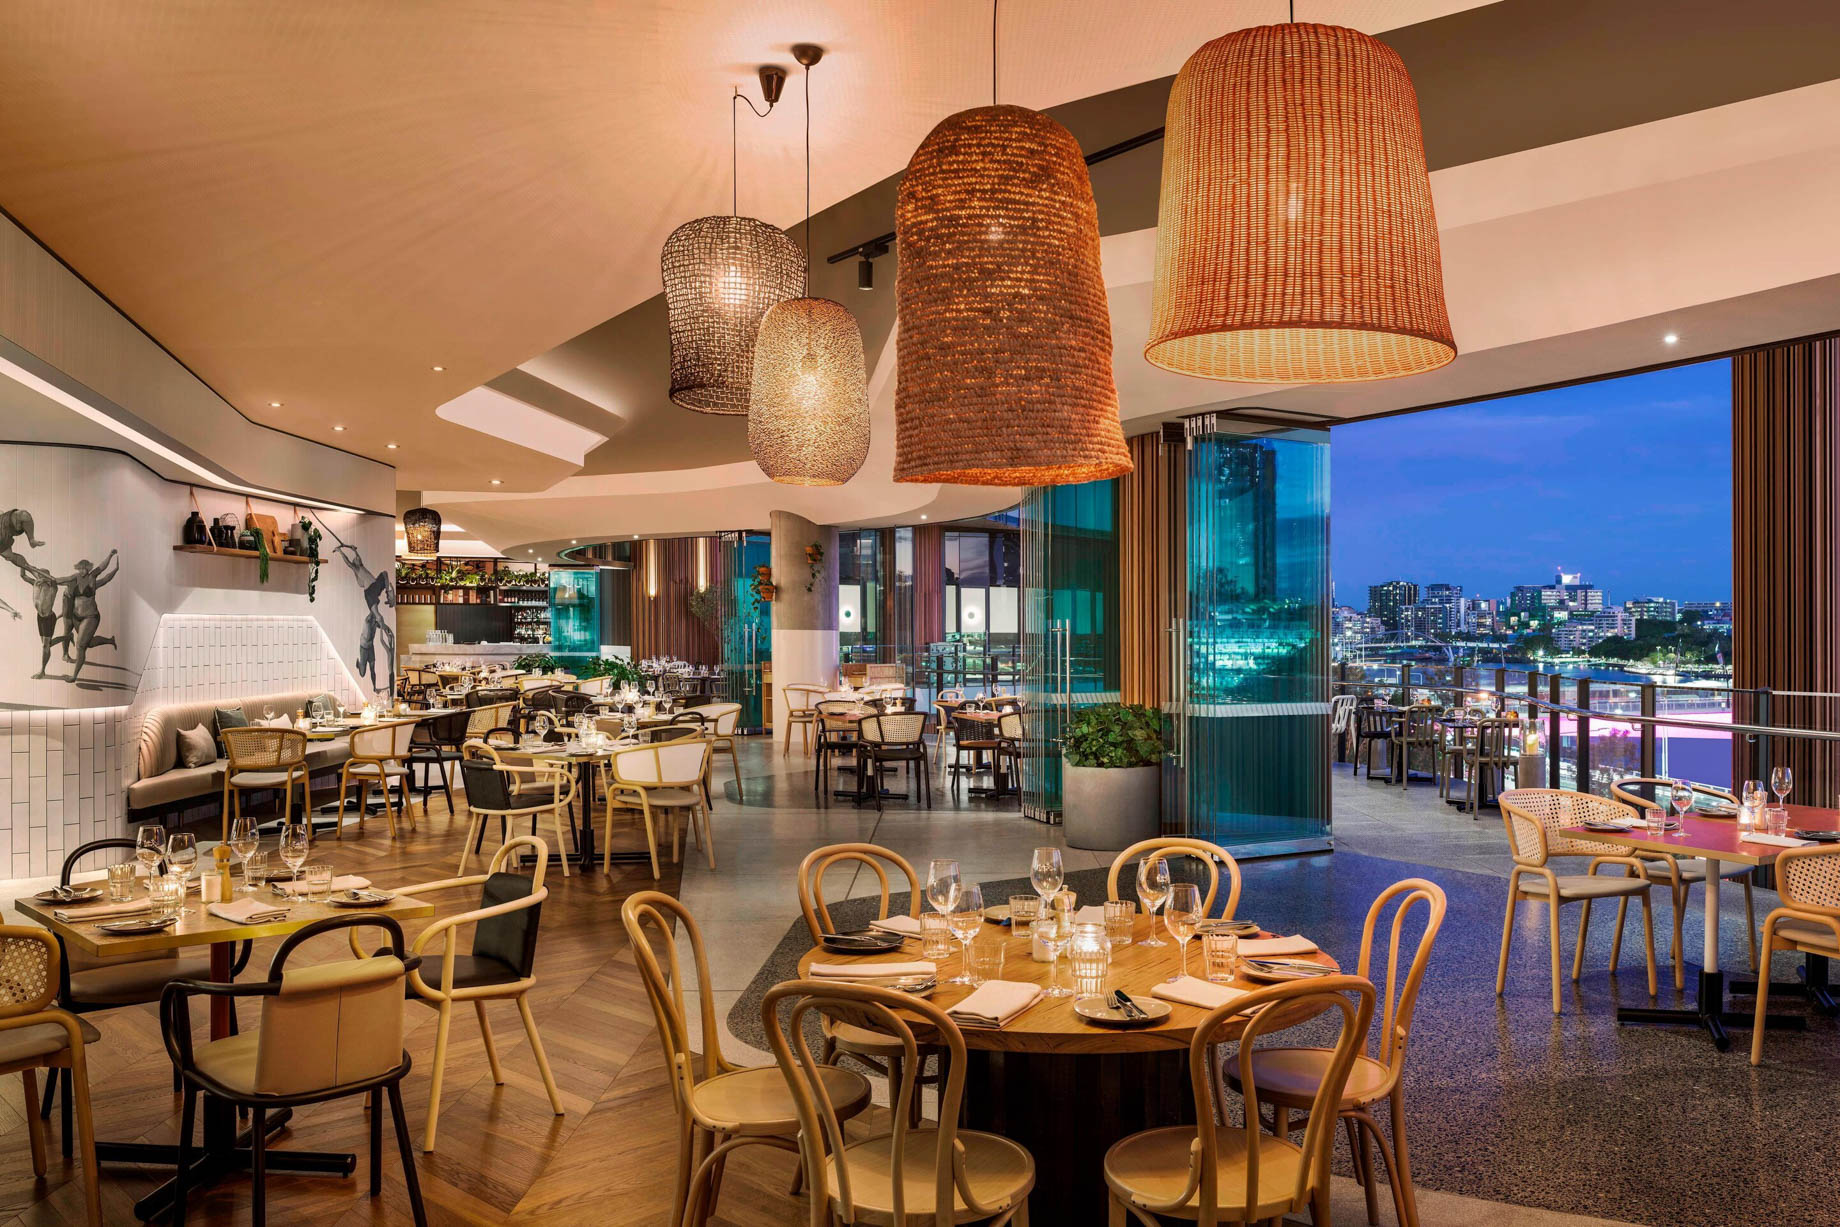 W Brisbane Hotel – Brisbane, Australia – Three Blue Ducks Restaurant